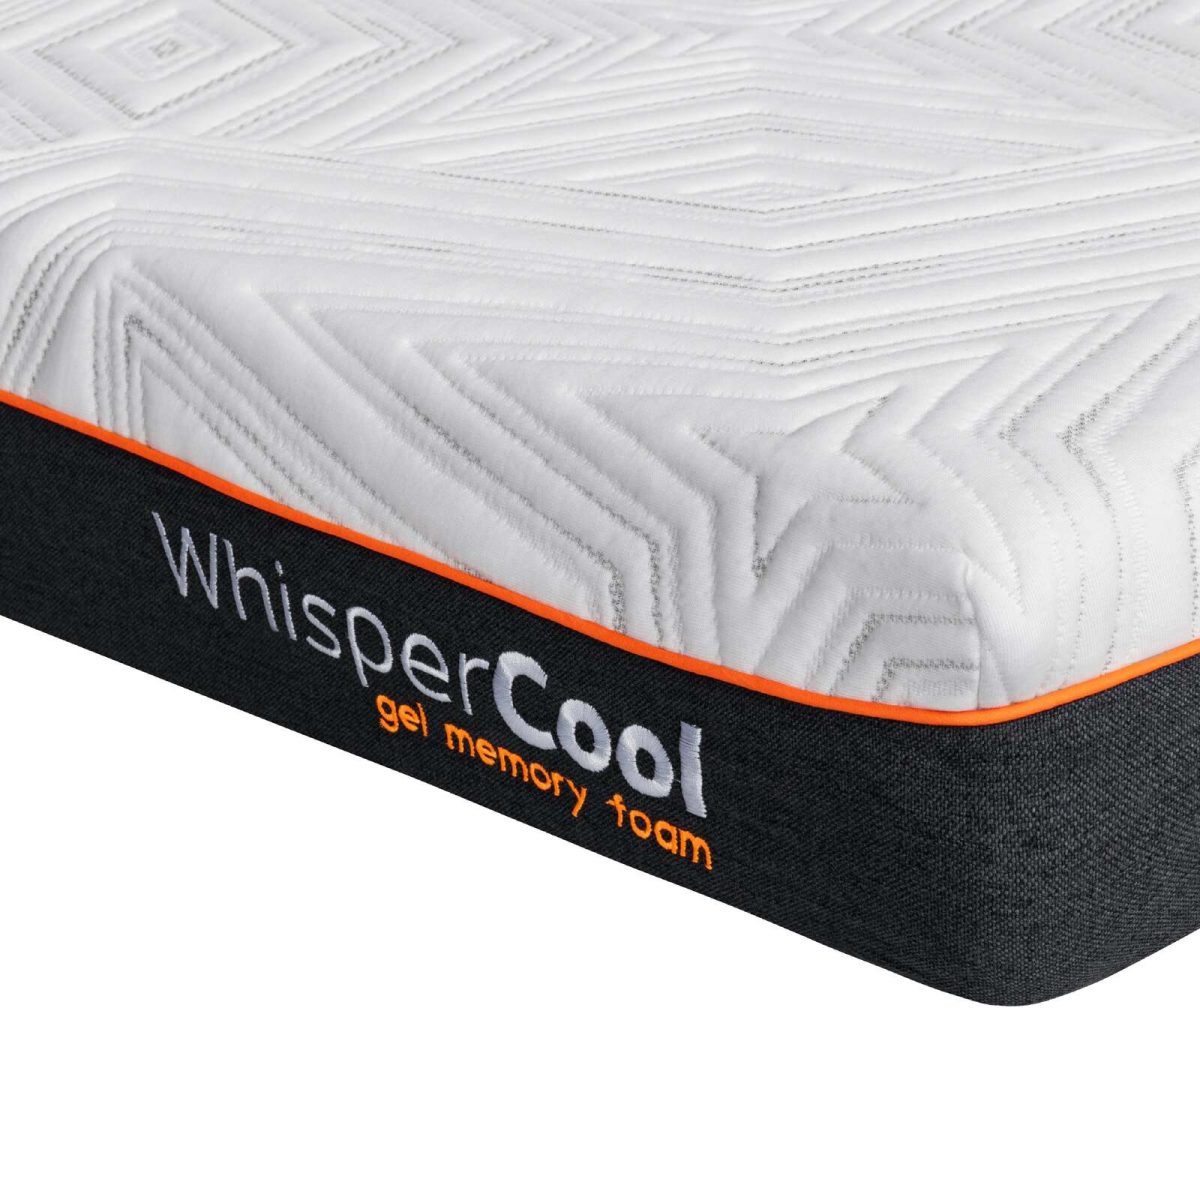 WhisperCool Gel Memory Foam Double Mattress